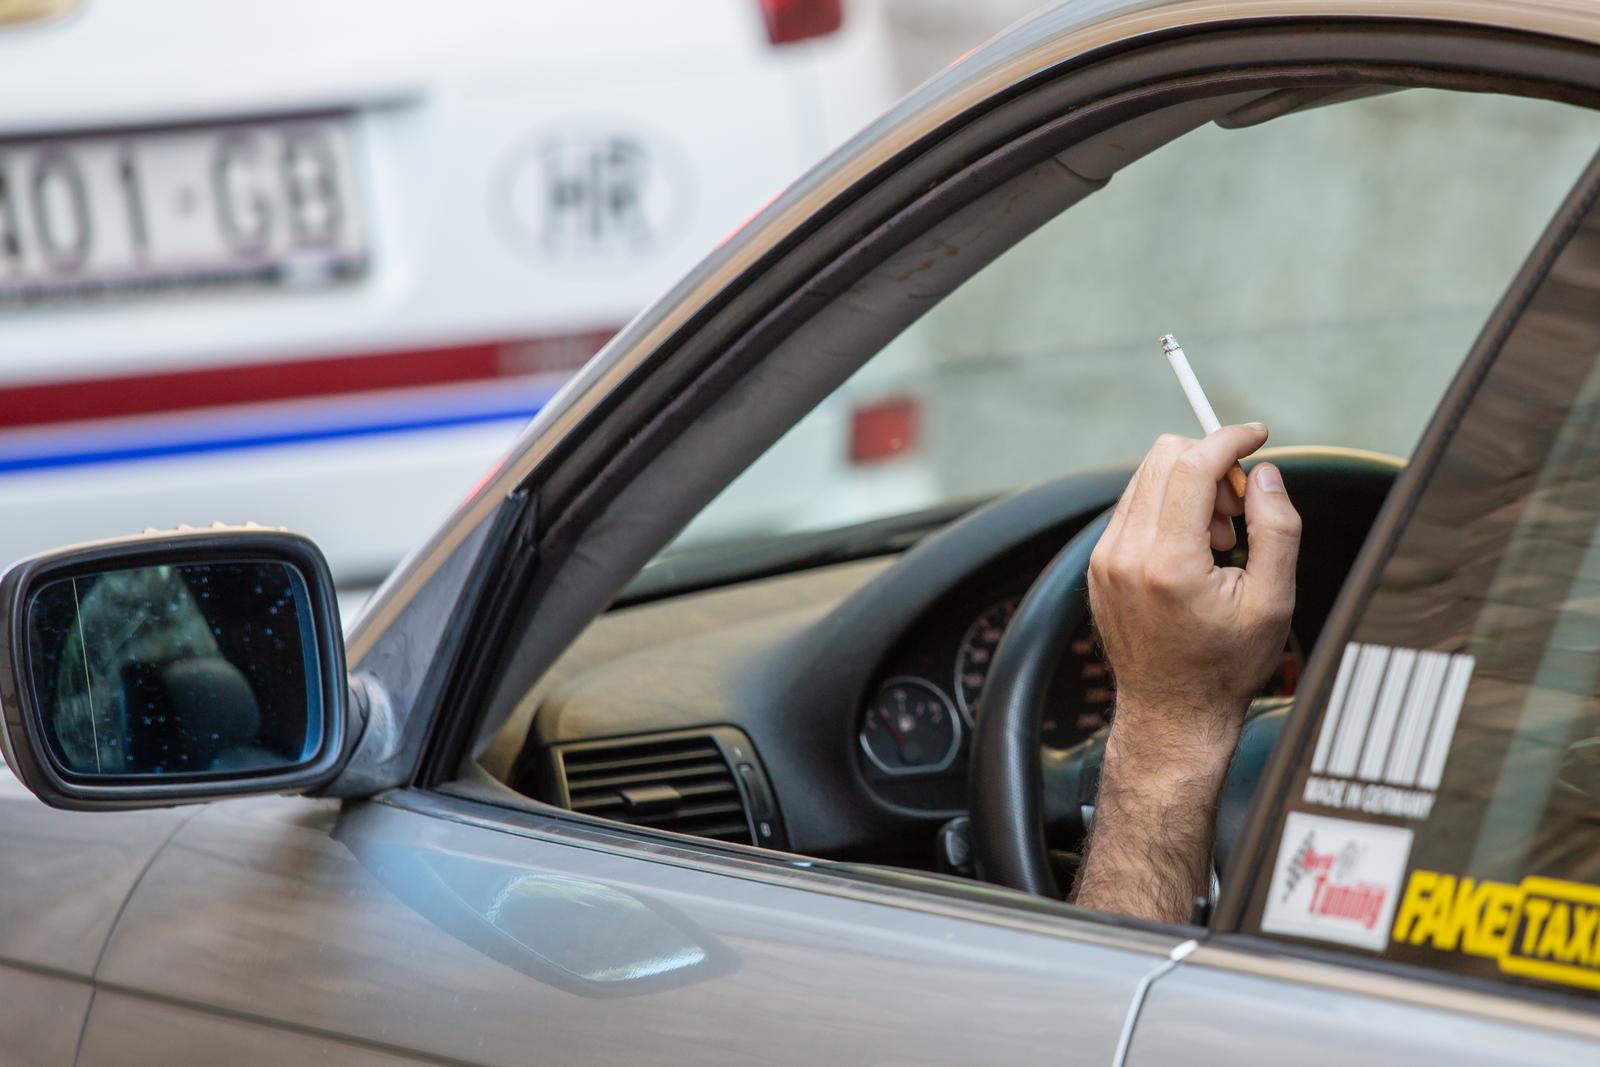 Pušenje cigareta tijekom vožnje 17.10.2018., Dubrovnik - Pusenje u voznji, rPhoto: Grgo Jelavic/PIXSELL